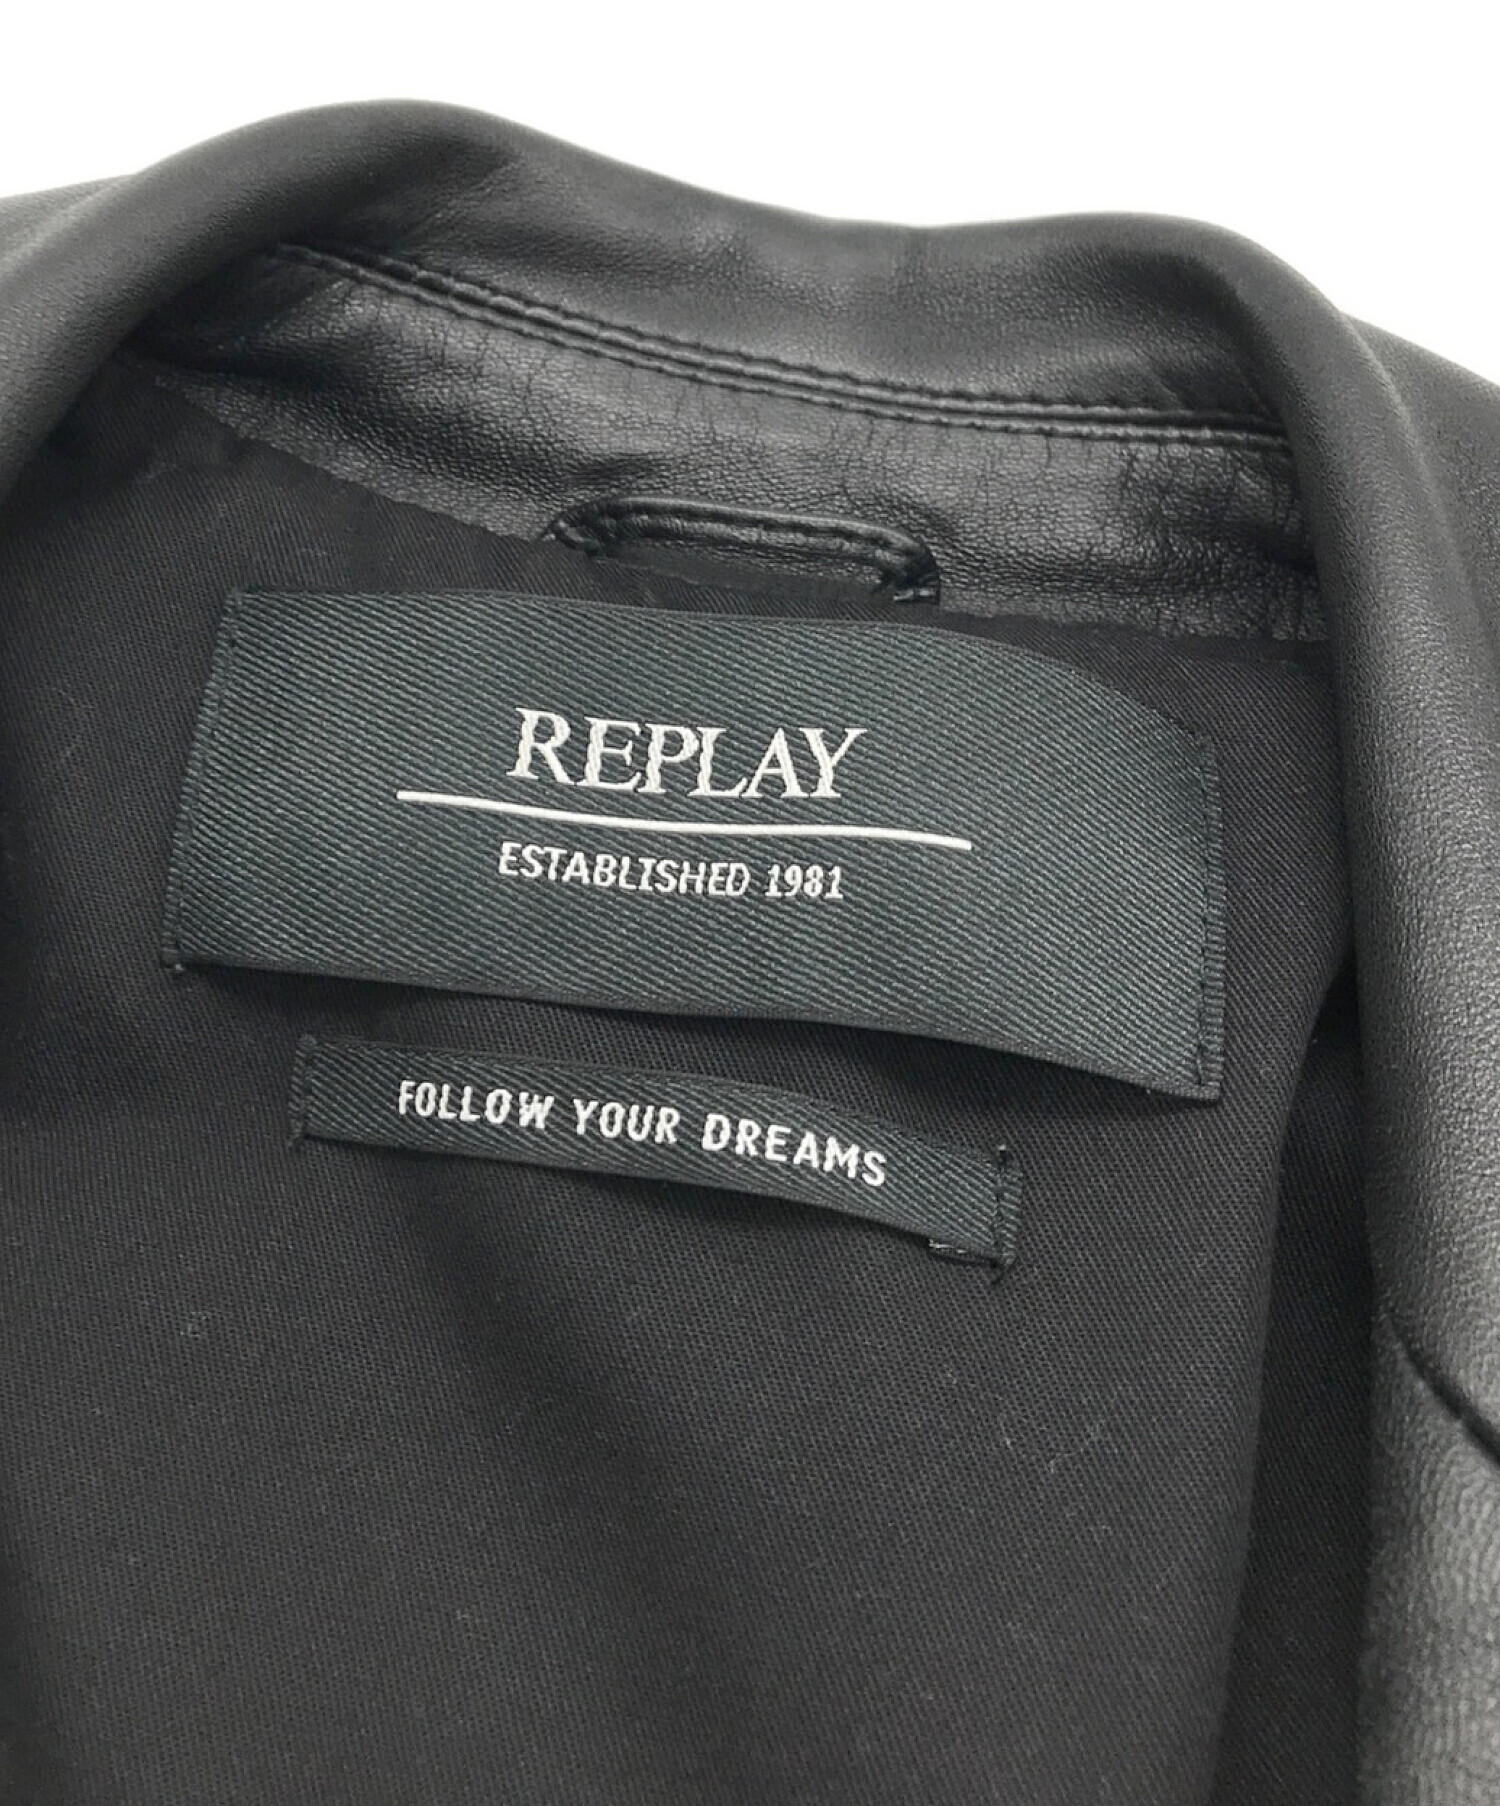 REPLAY (リプレイ) ラムレザーダブルライダースジャケット ブラック サイズ:S